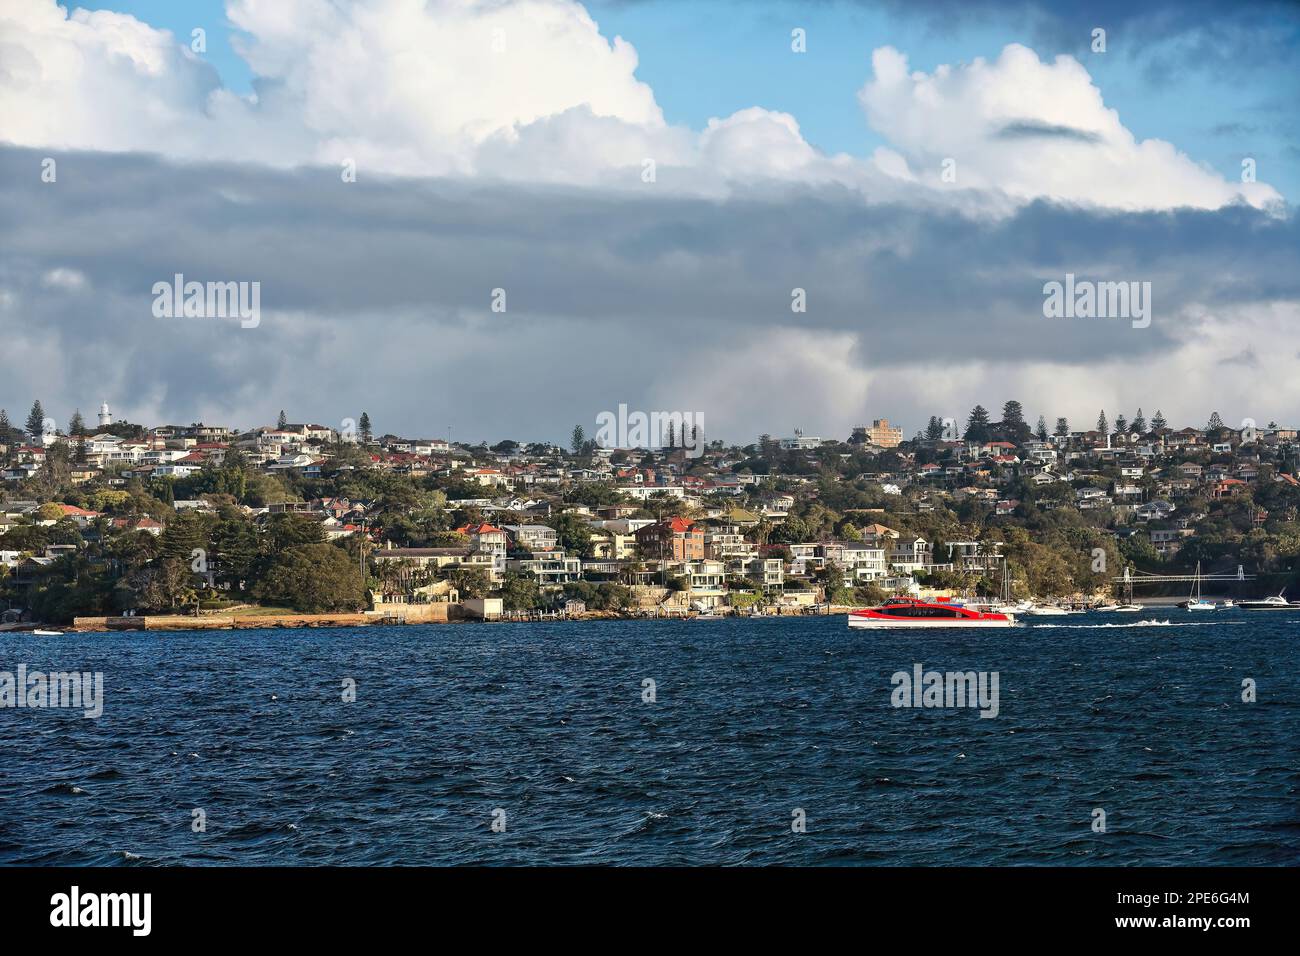 548 Uhr Blick auf den Vorort Watsons Bay auf der Halbinsel South Head von Port Jackson von der Fähre Manly-Circular Quay aus. Hafen Von Sydney-Australien. Stockfoto